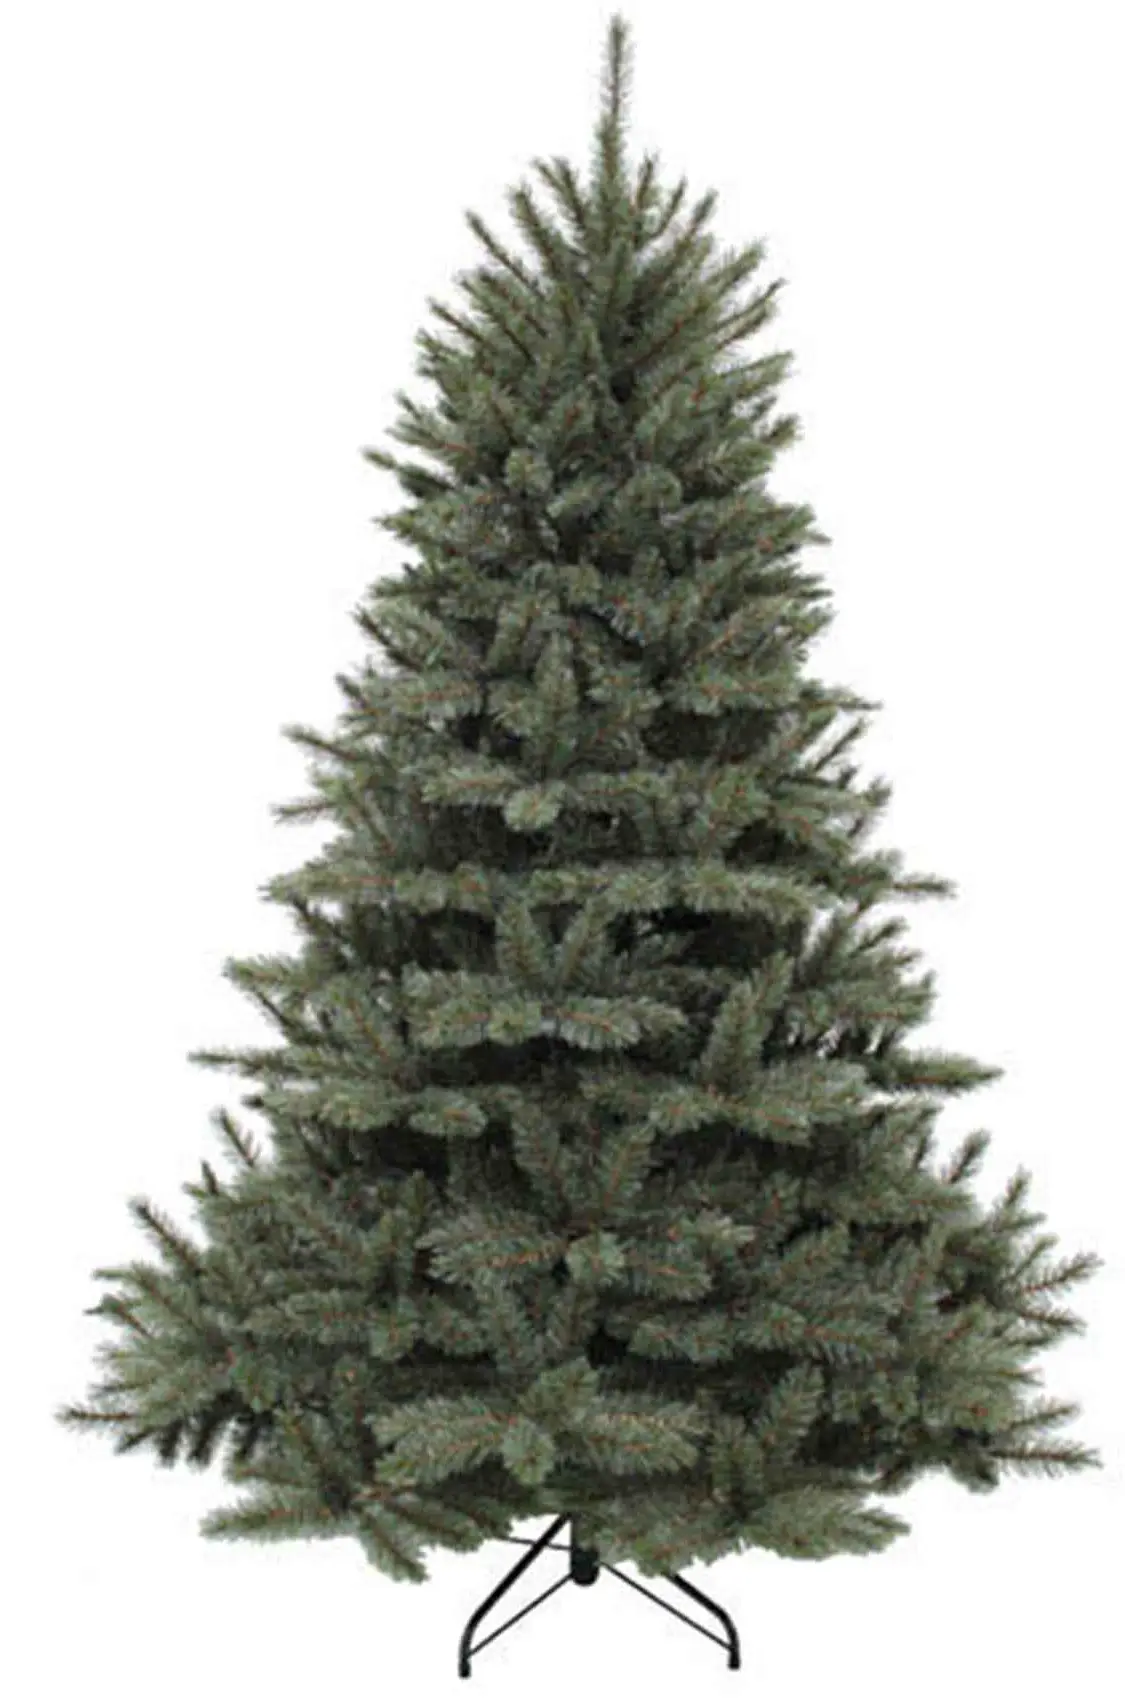 K眉nstlicher Weihnachtsbaum ForestFrosted